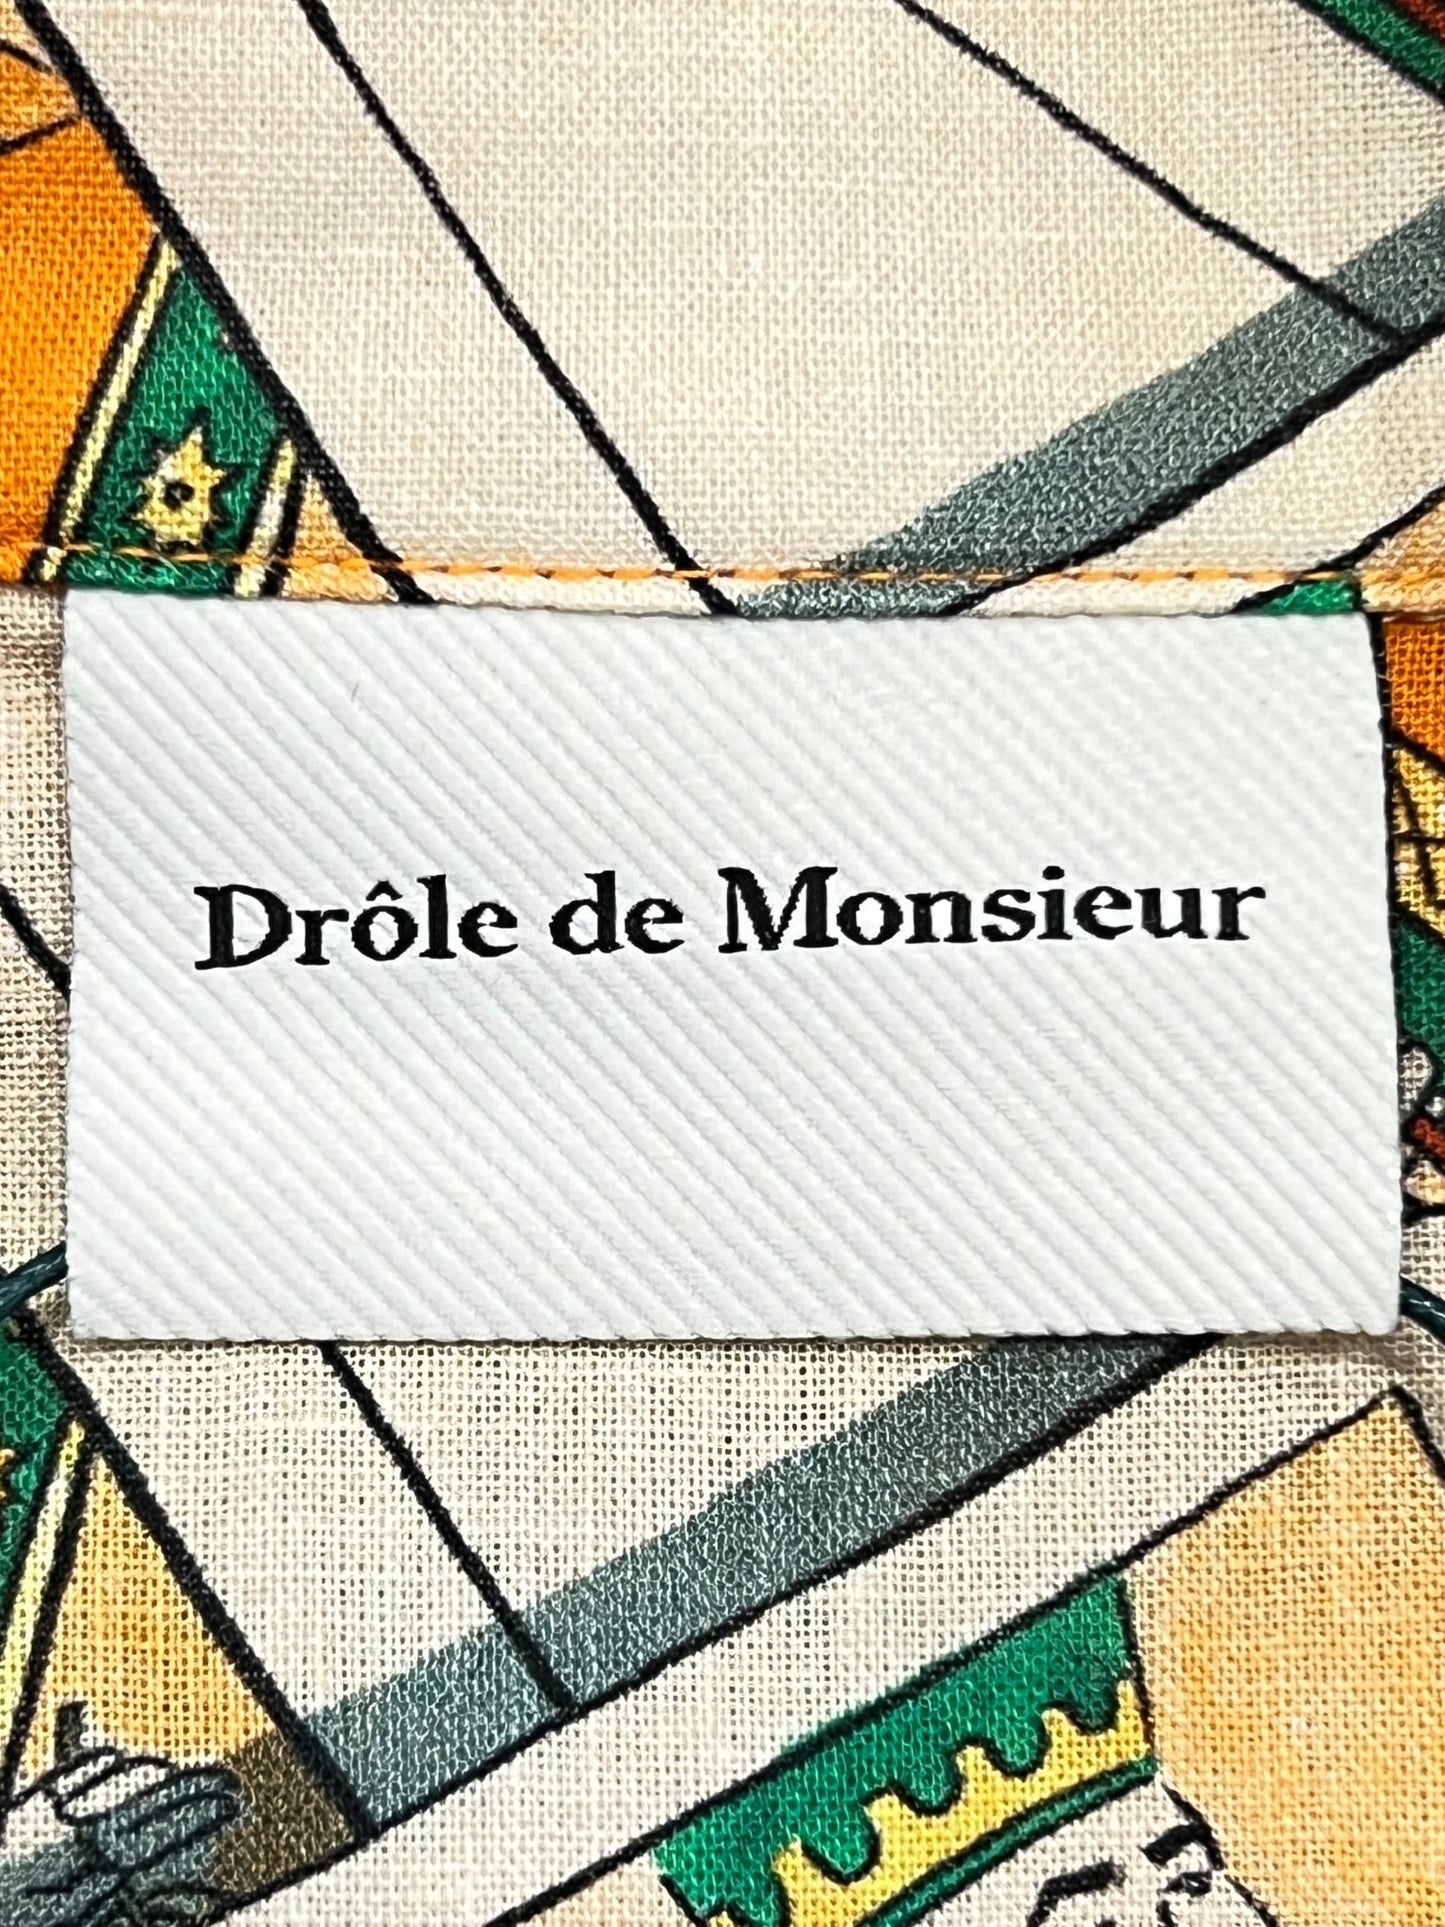 A DROLE DE MONSIEUR SHIRT D-SH158-LI002 LA CHEMISE JEU DE CARTES PC with a beige cotton linen shirt as its background.